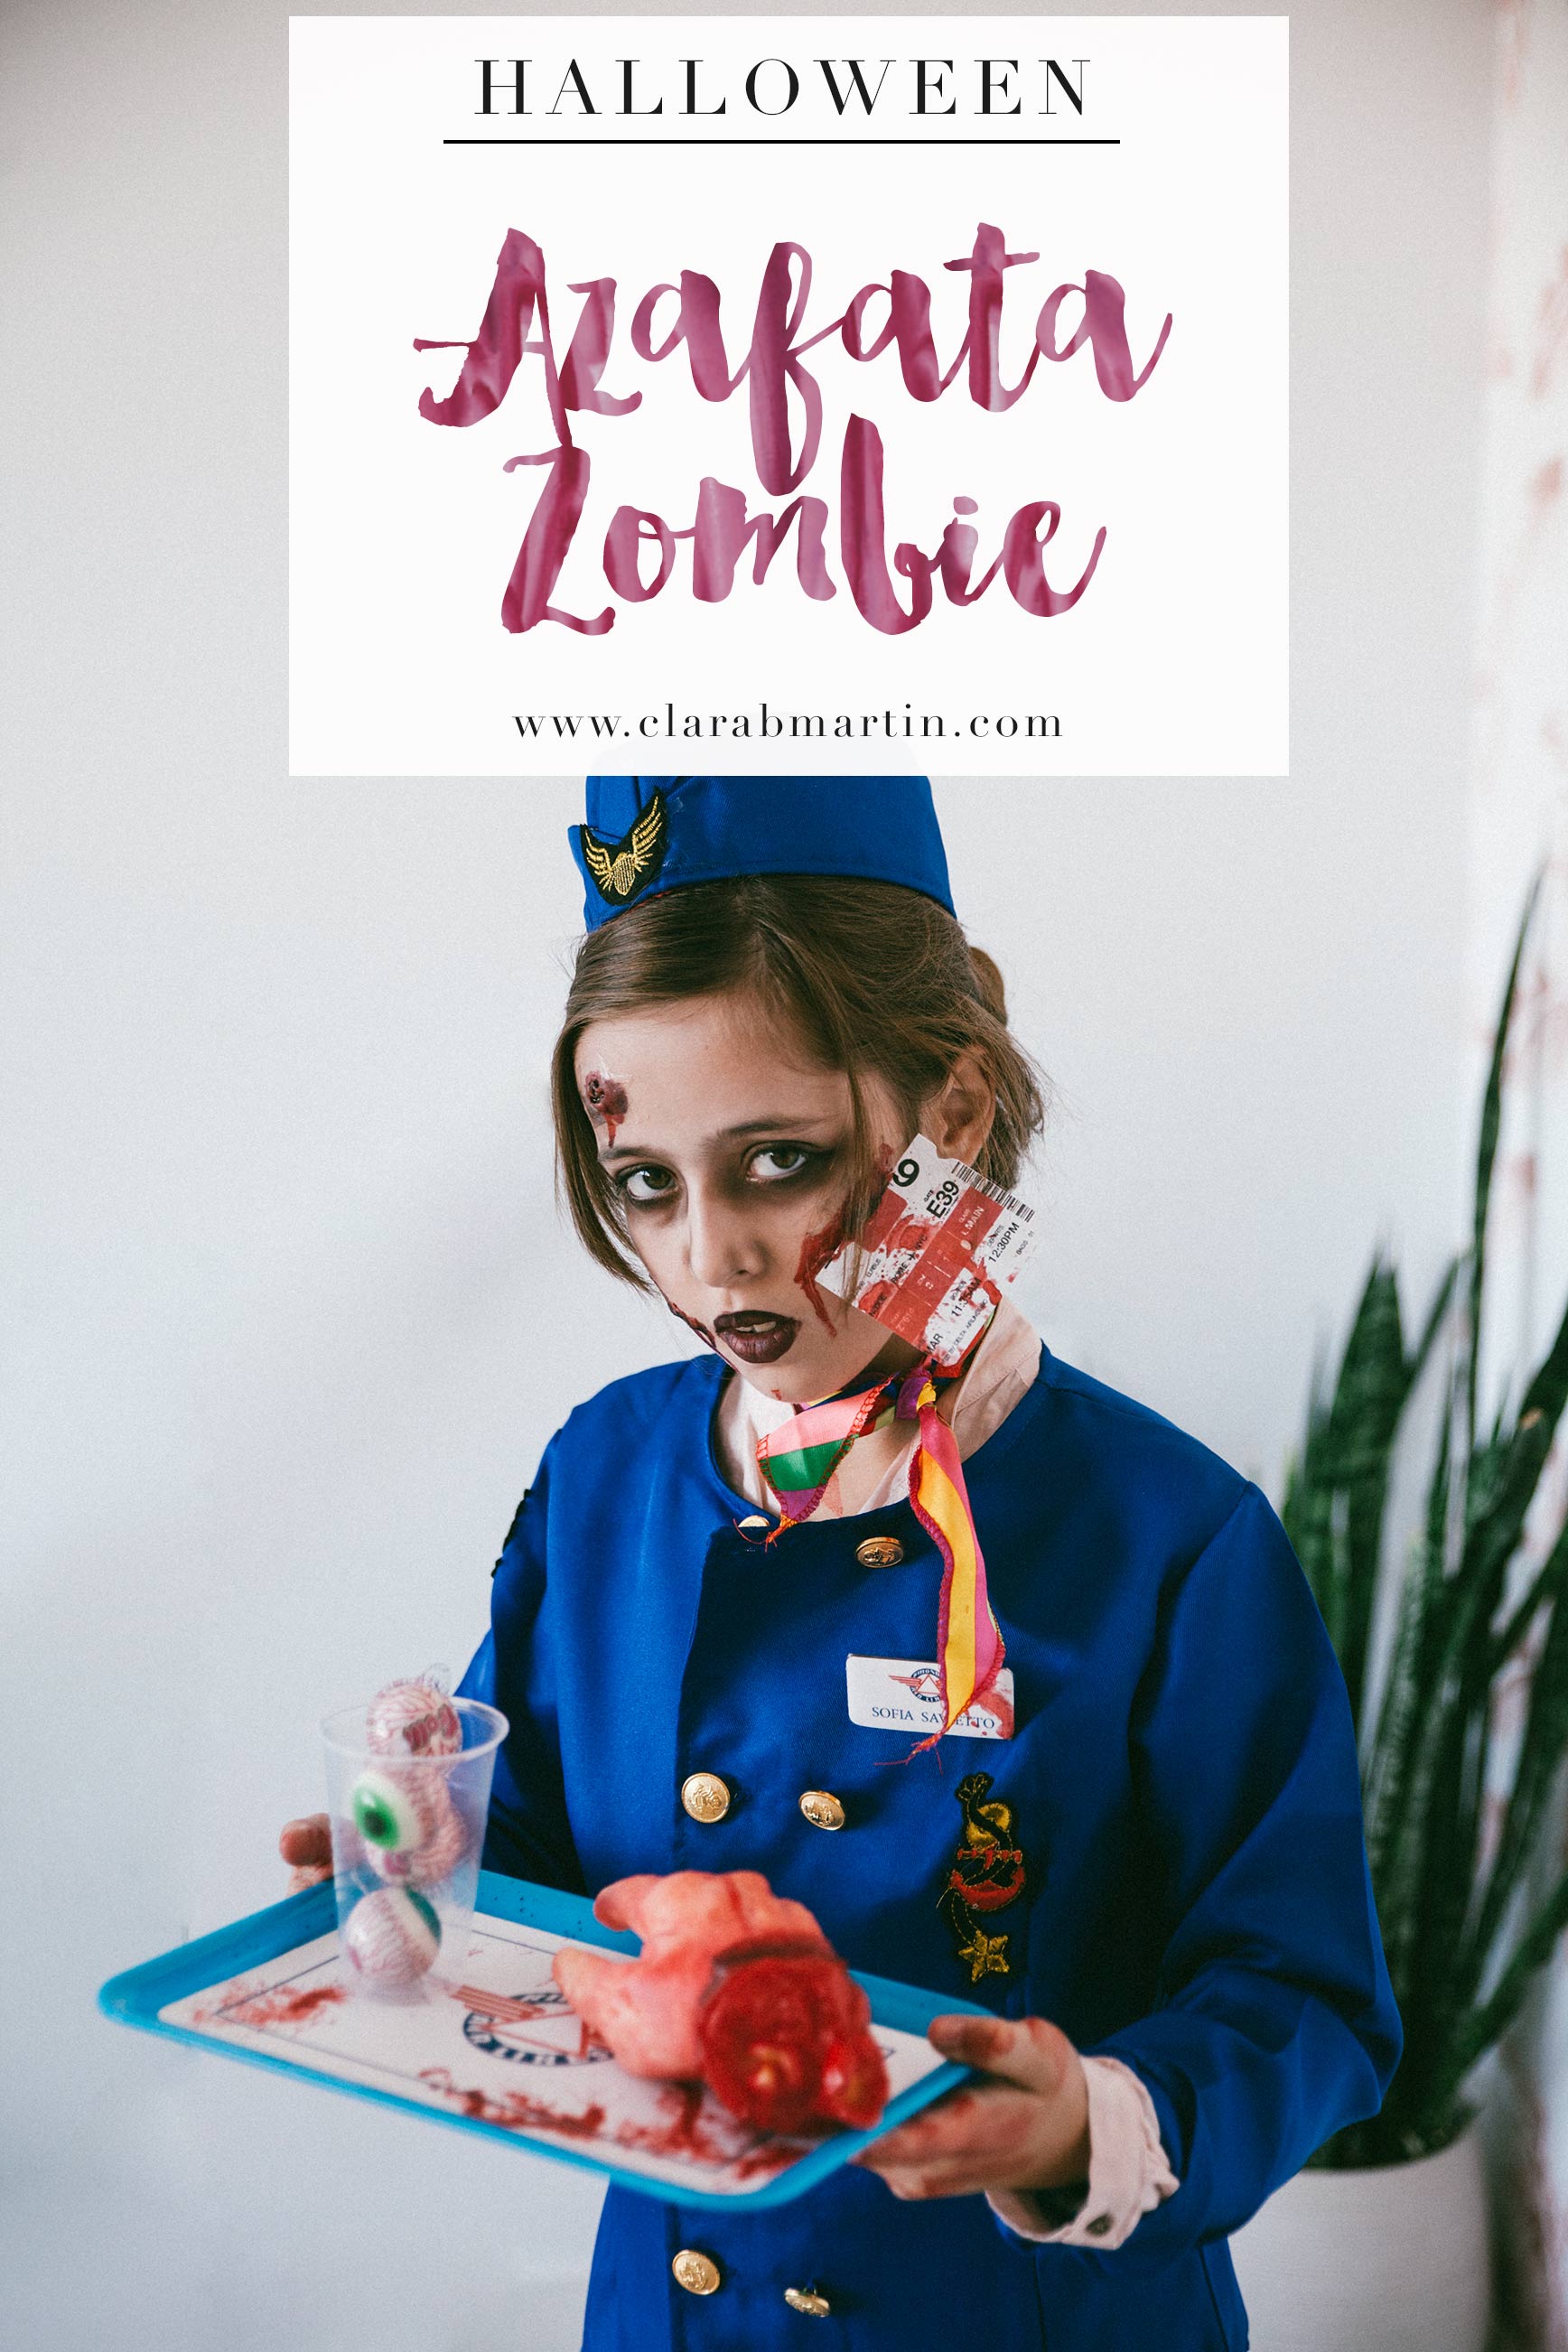 Disfraz Halloween azafata zombie 